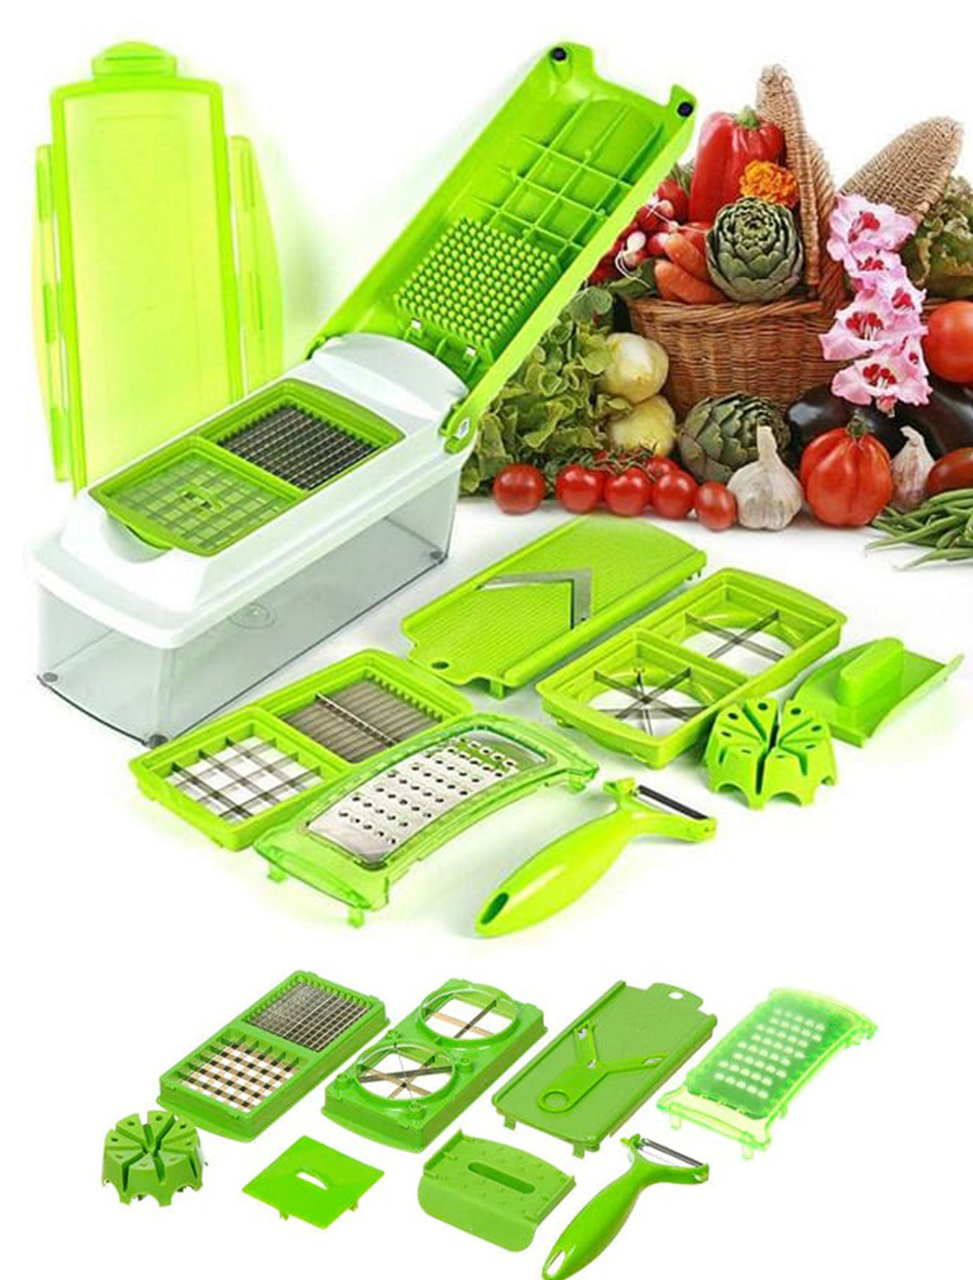 مفرمة الخضر و الفواكه سهلة ومتعددة الاستعمالات في المطبخ